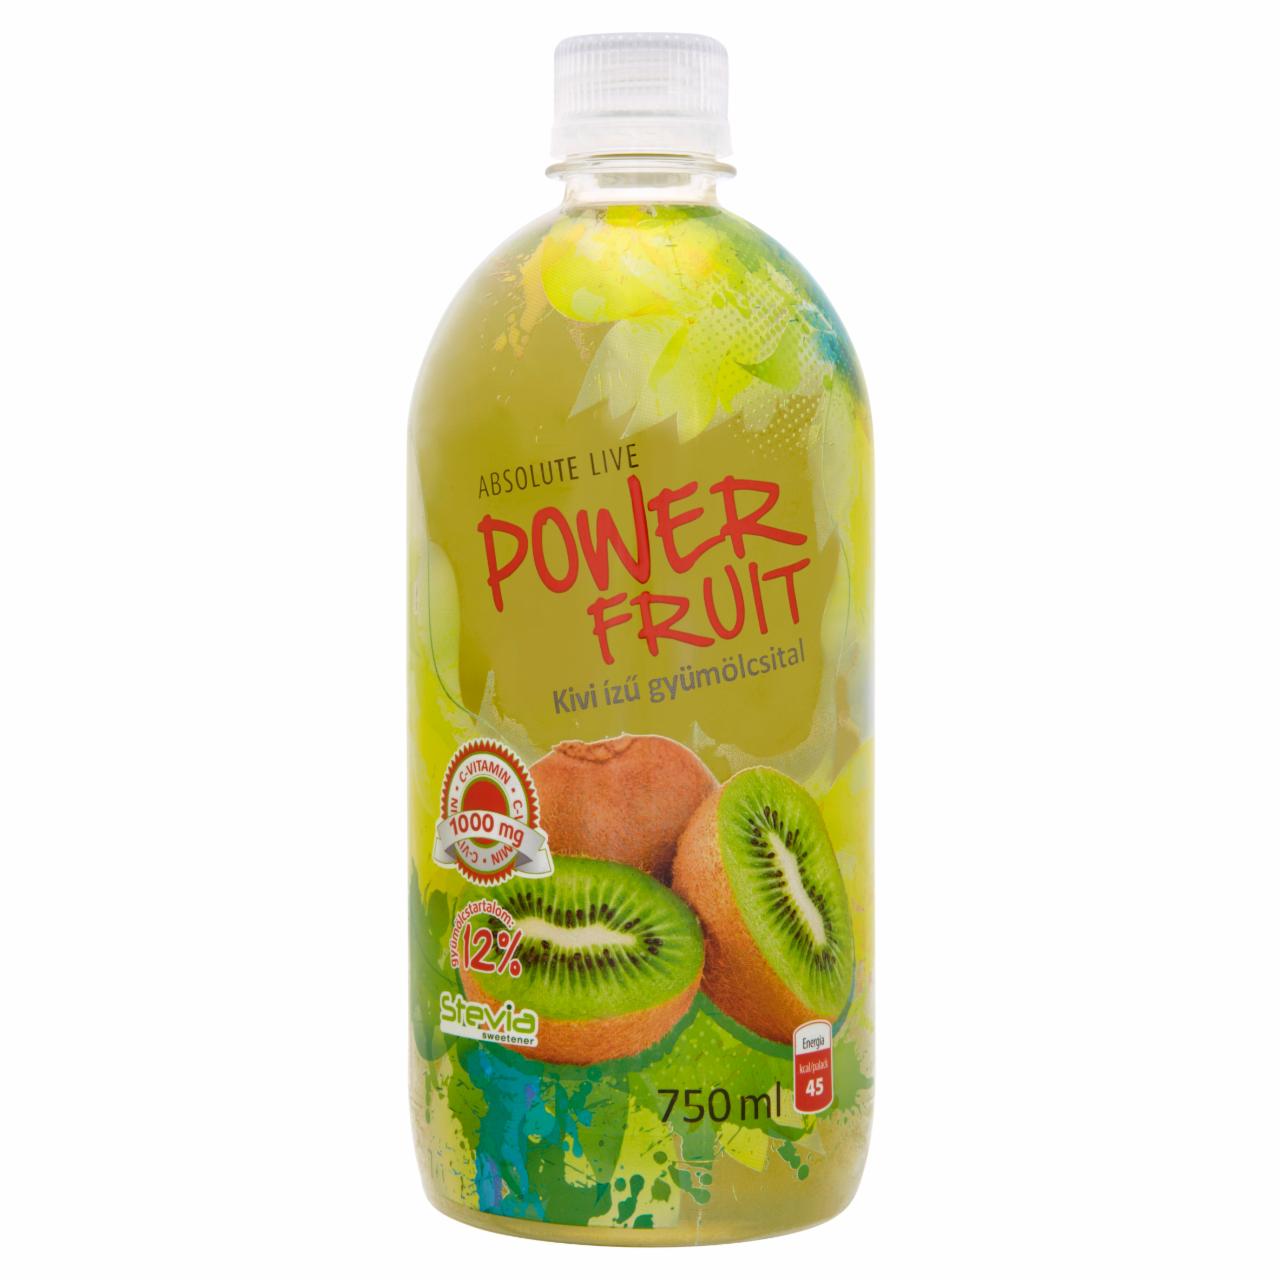 Képek - Absolute Live Power Fruit kiviízű gyümölcsital 750 ml